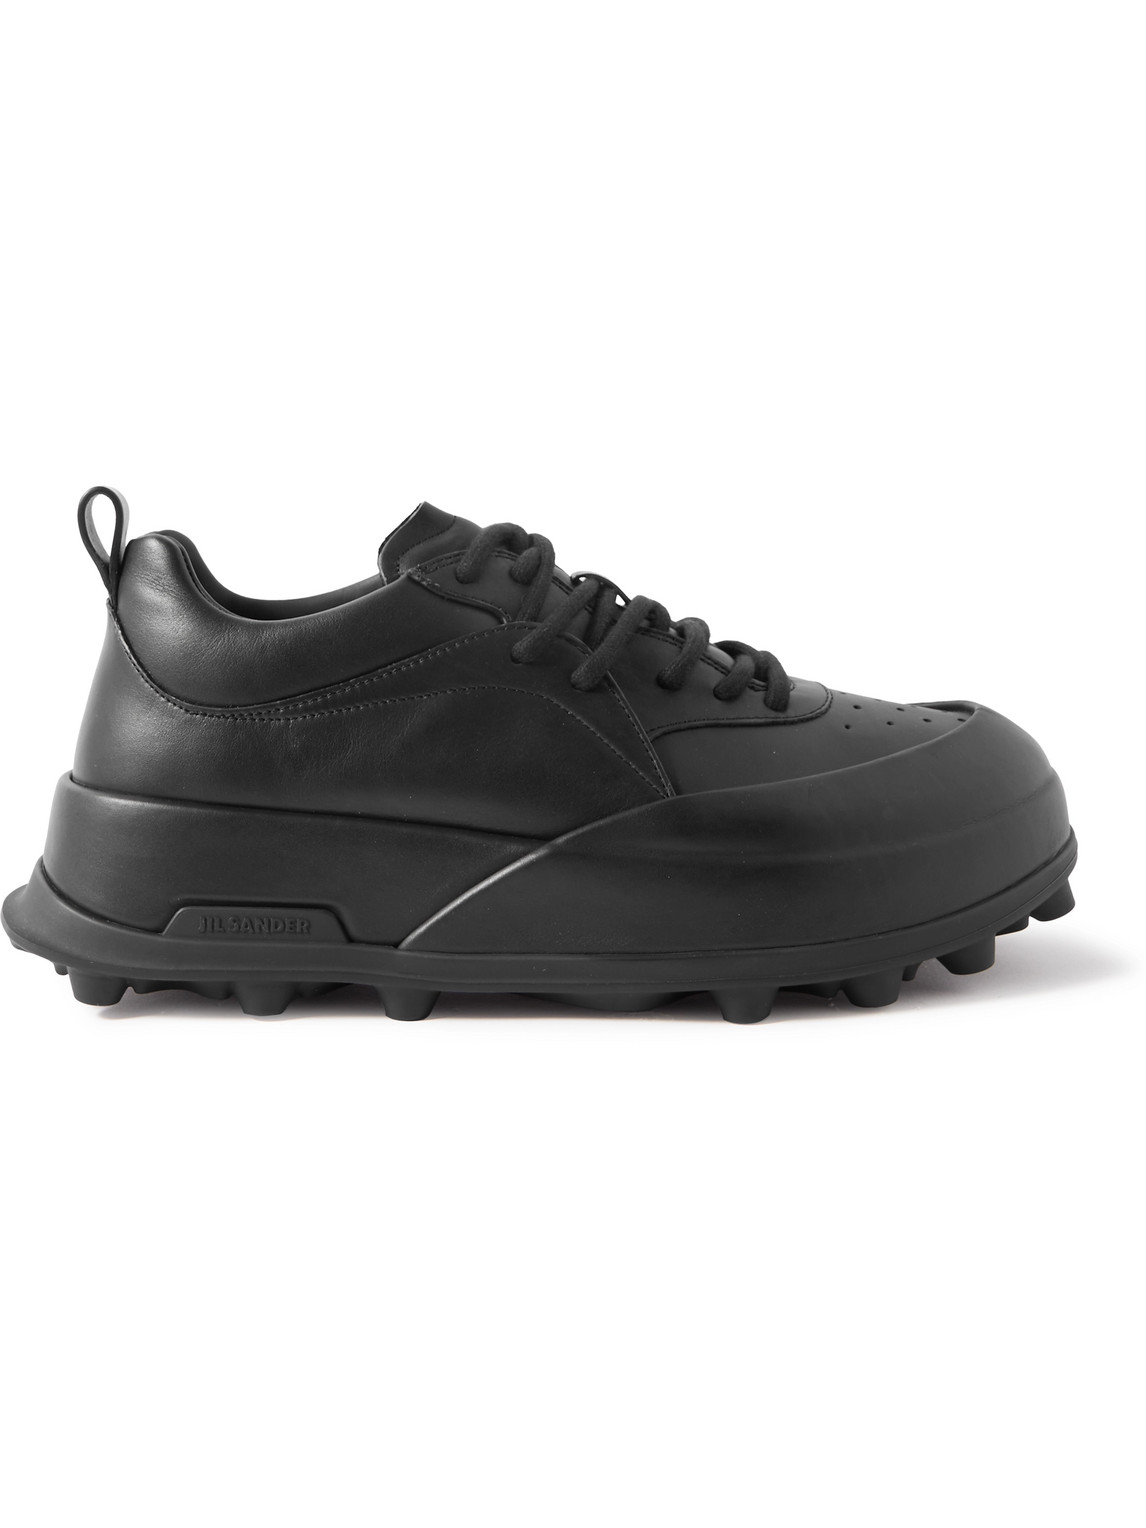 Jil Sander Orb Leather Sneakers In Black